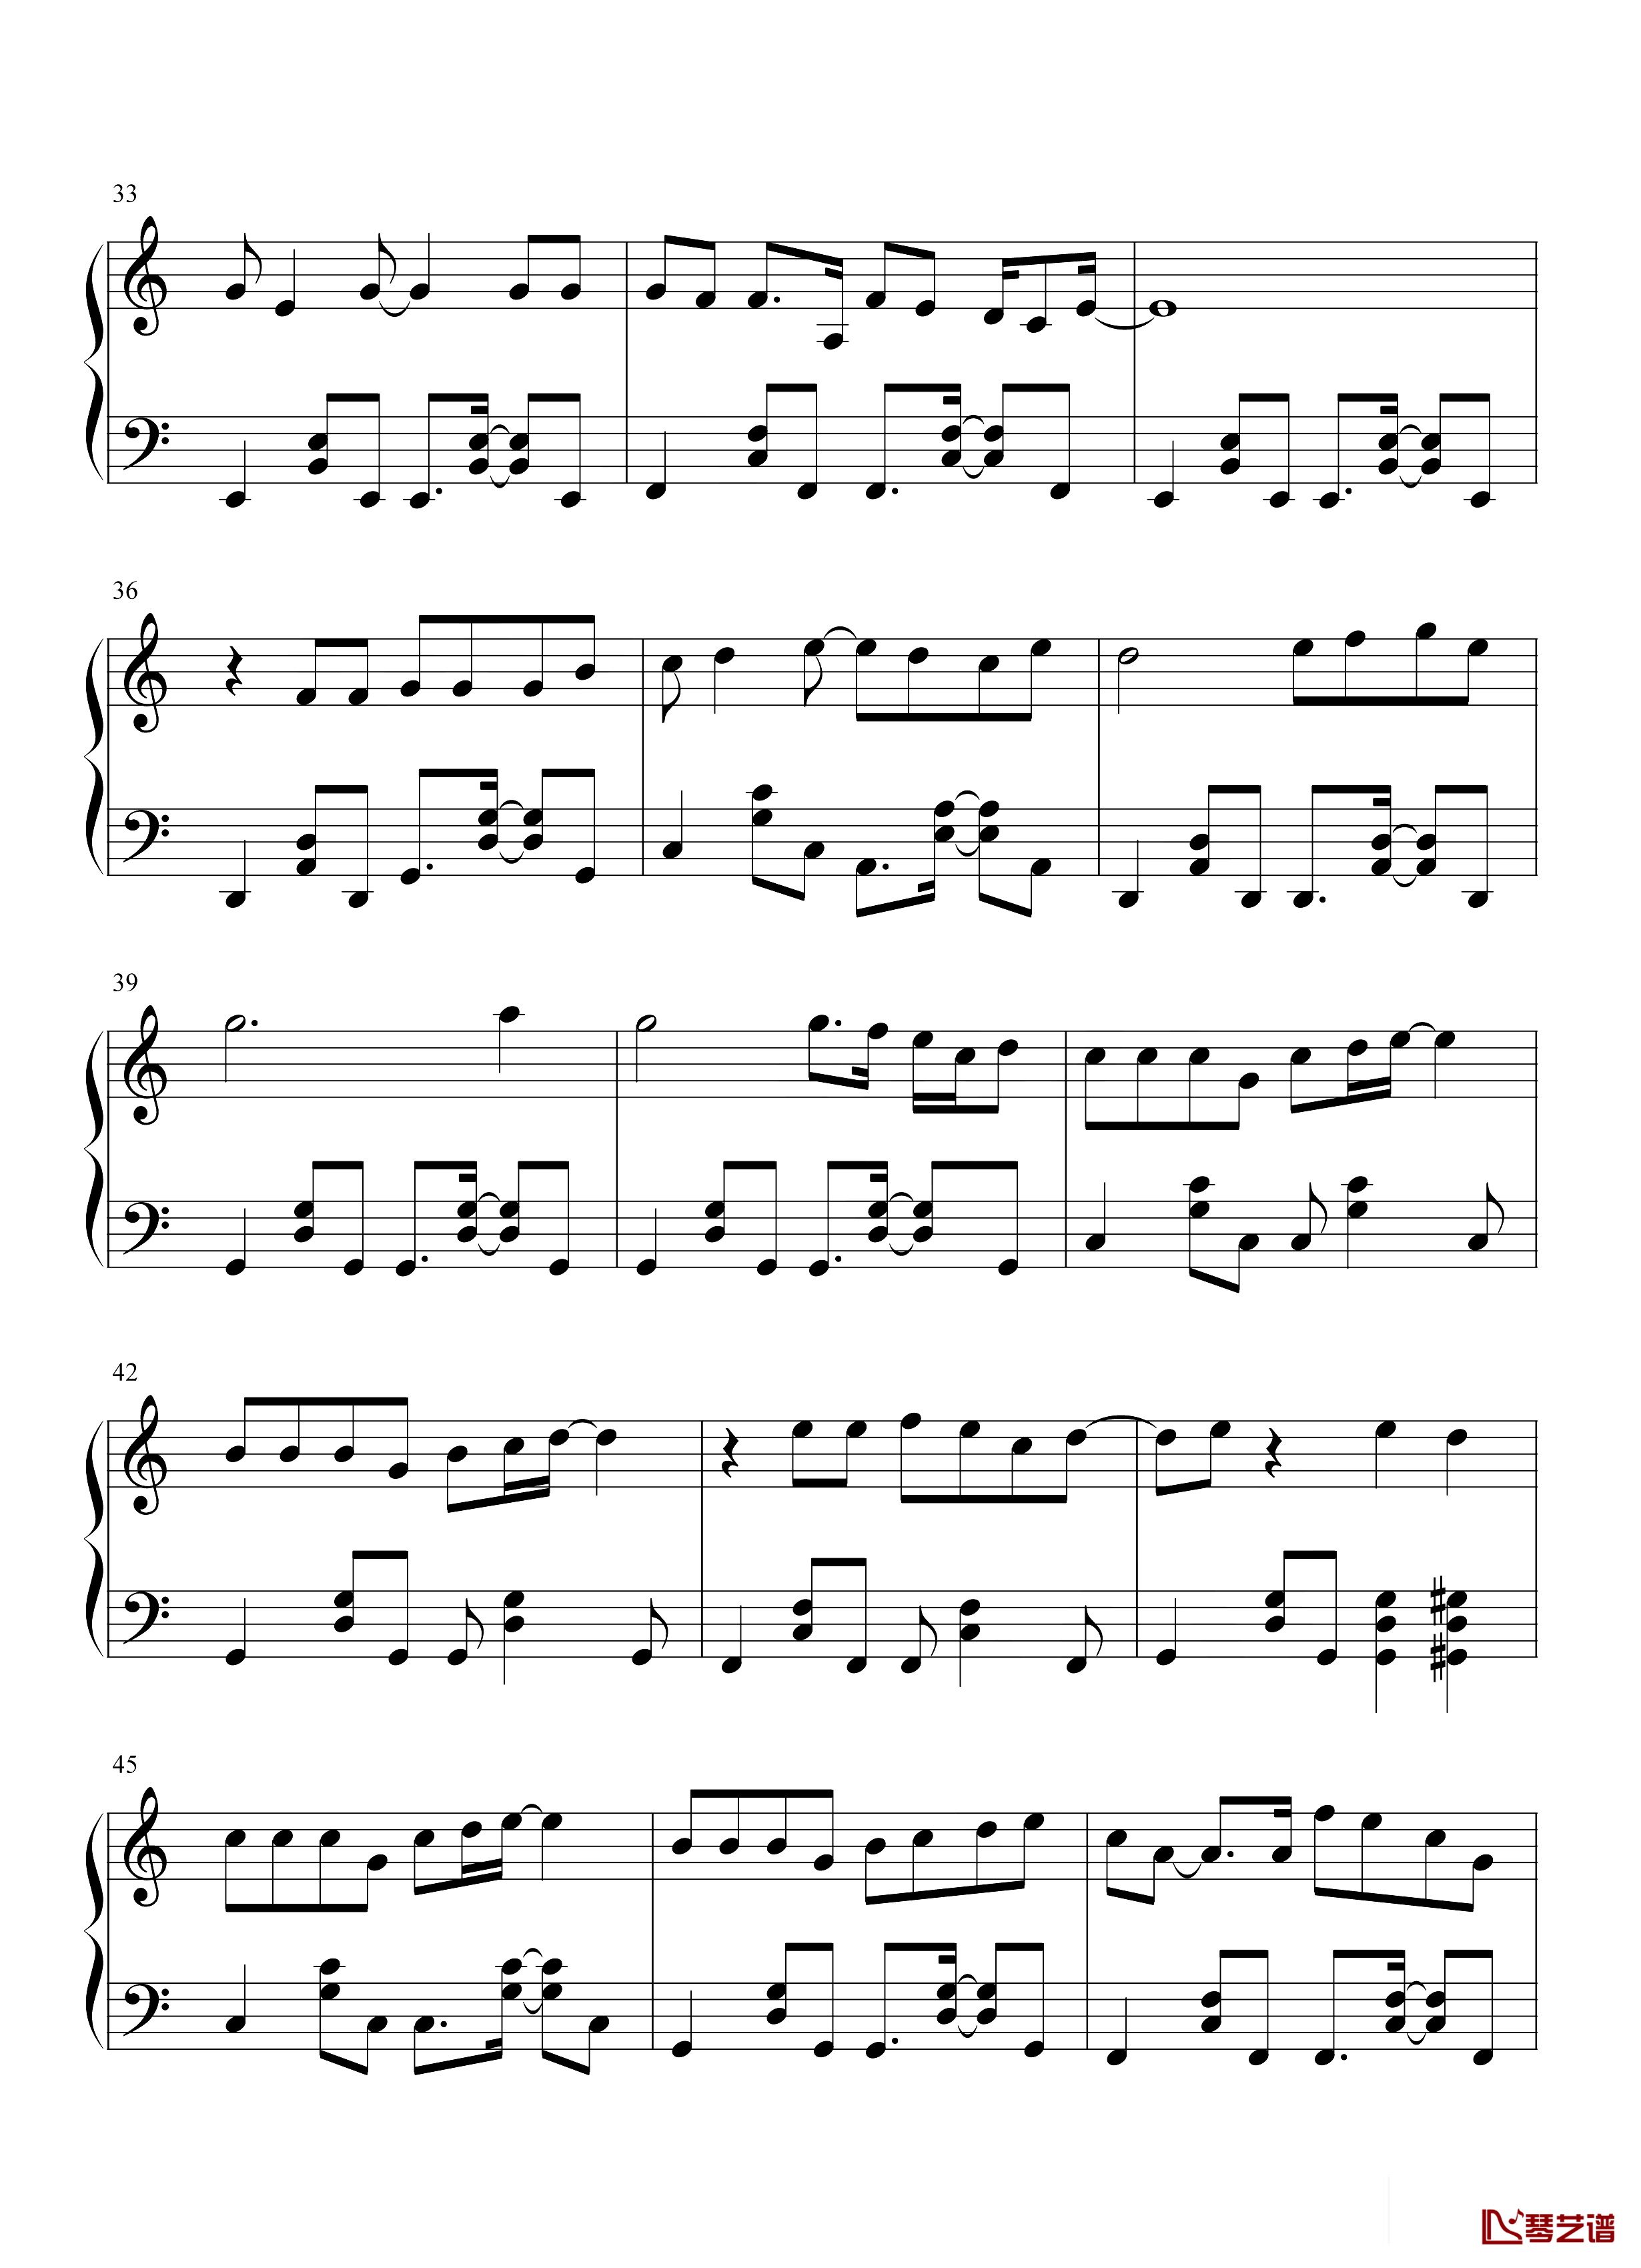 钢琴谱唯一-王力宏-王力宏最具流行度的作品之一!3